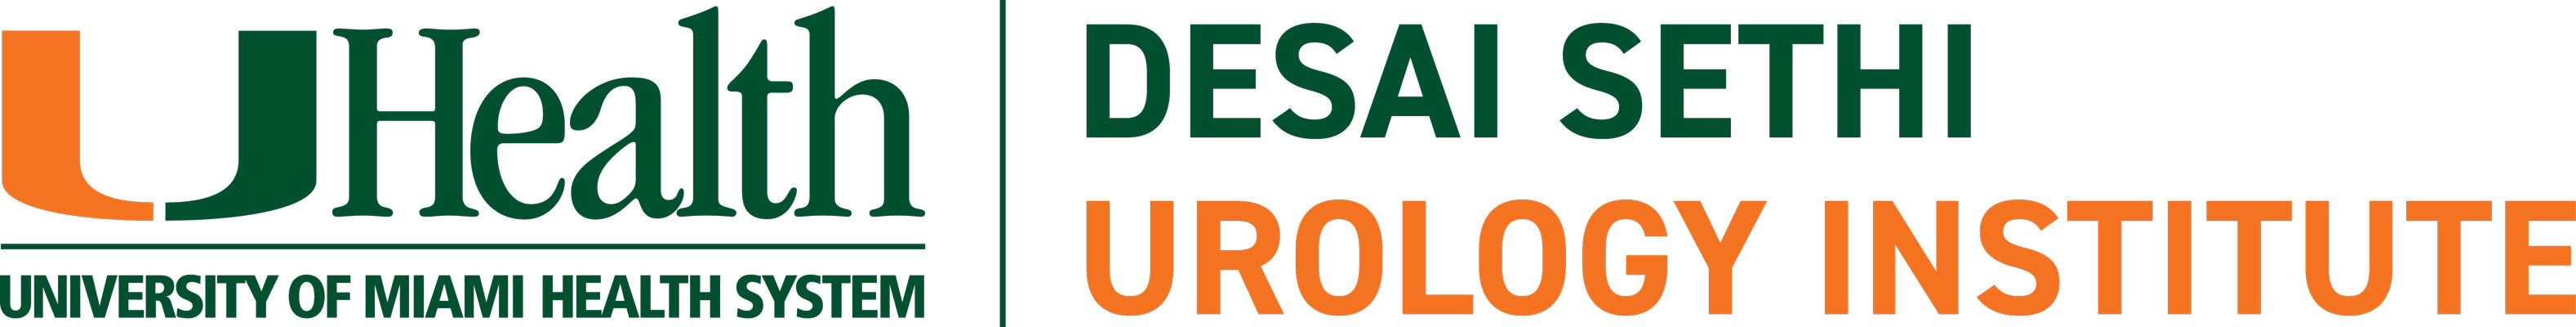 Desai Sethi Urology Institute Logo